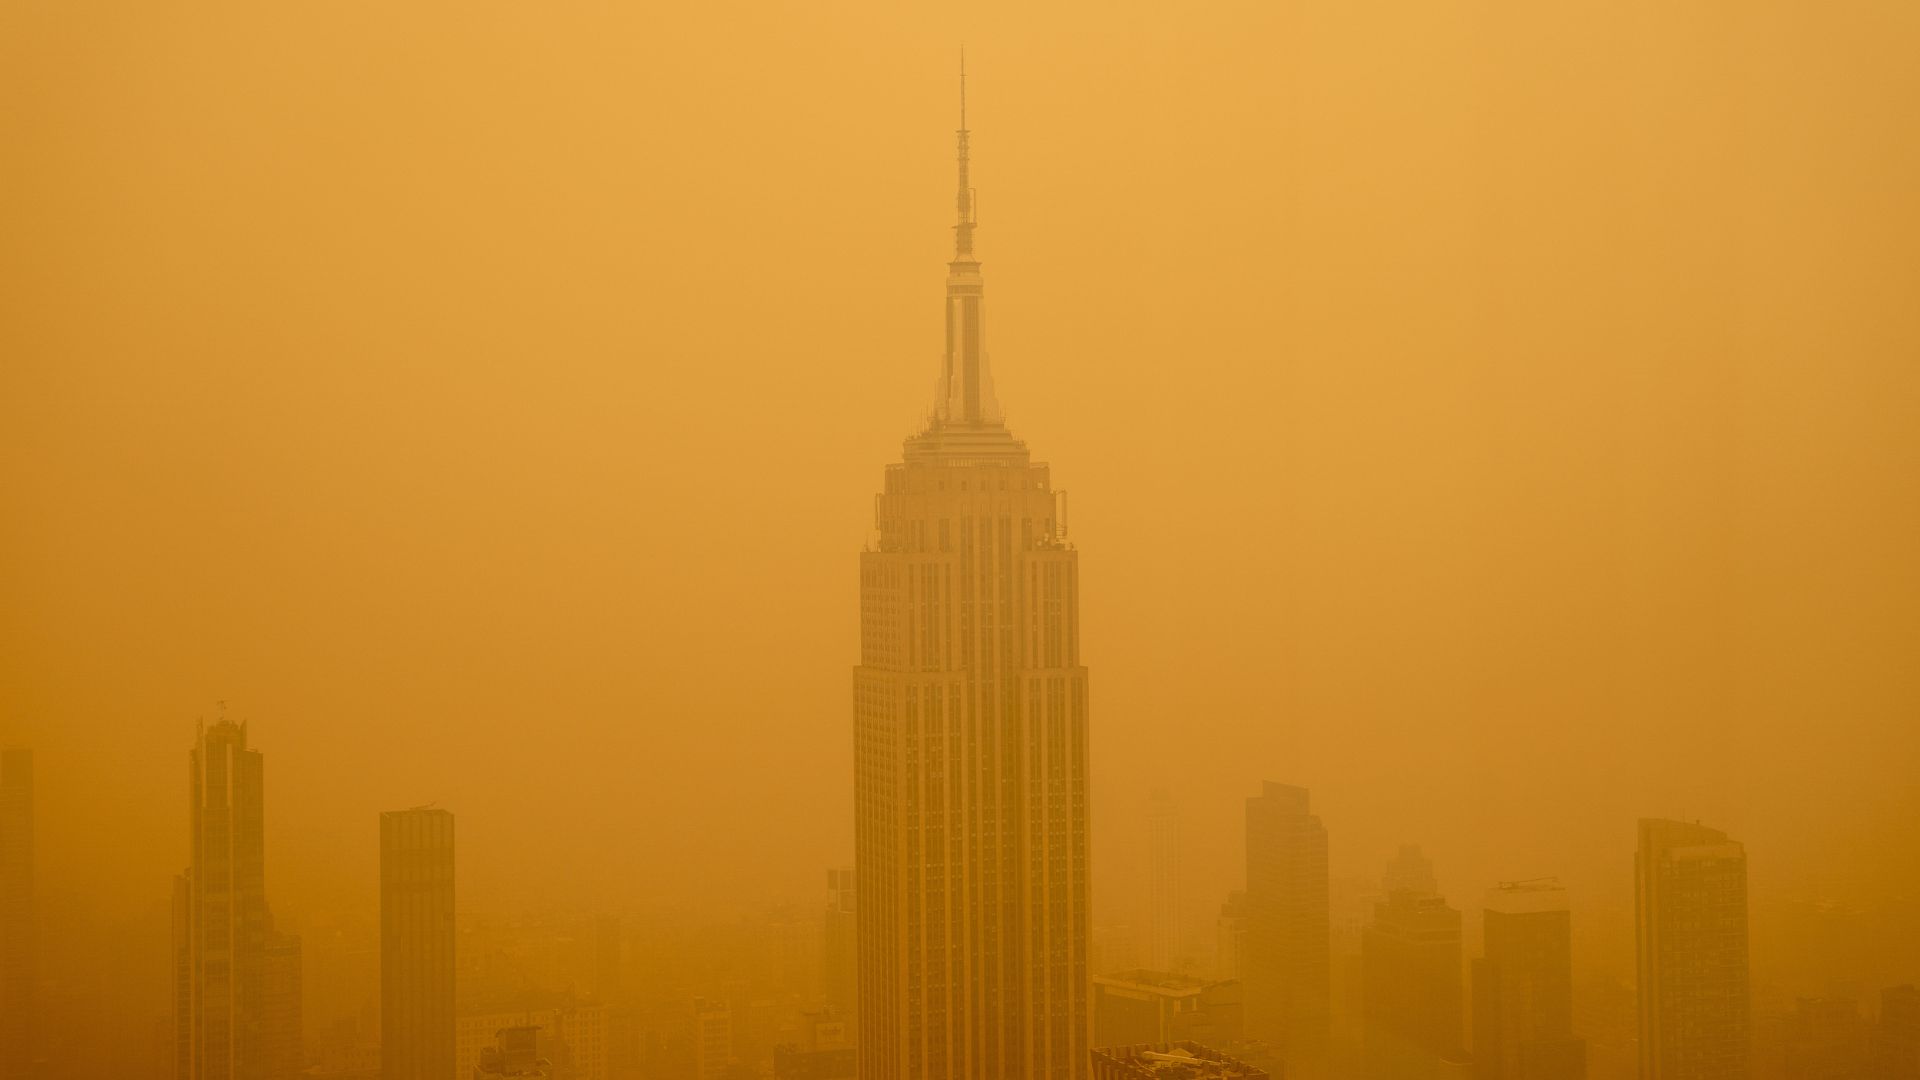 la foto muestra el Empire State Building visto desde un rascacielos cercano;  el edificio y los que están cerca están rodeados por una densa nube de smog de color amarillo anaranjado formada por el humo de los incendios forestales